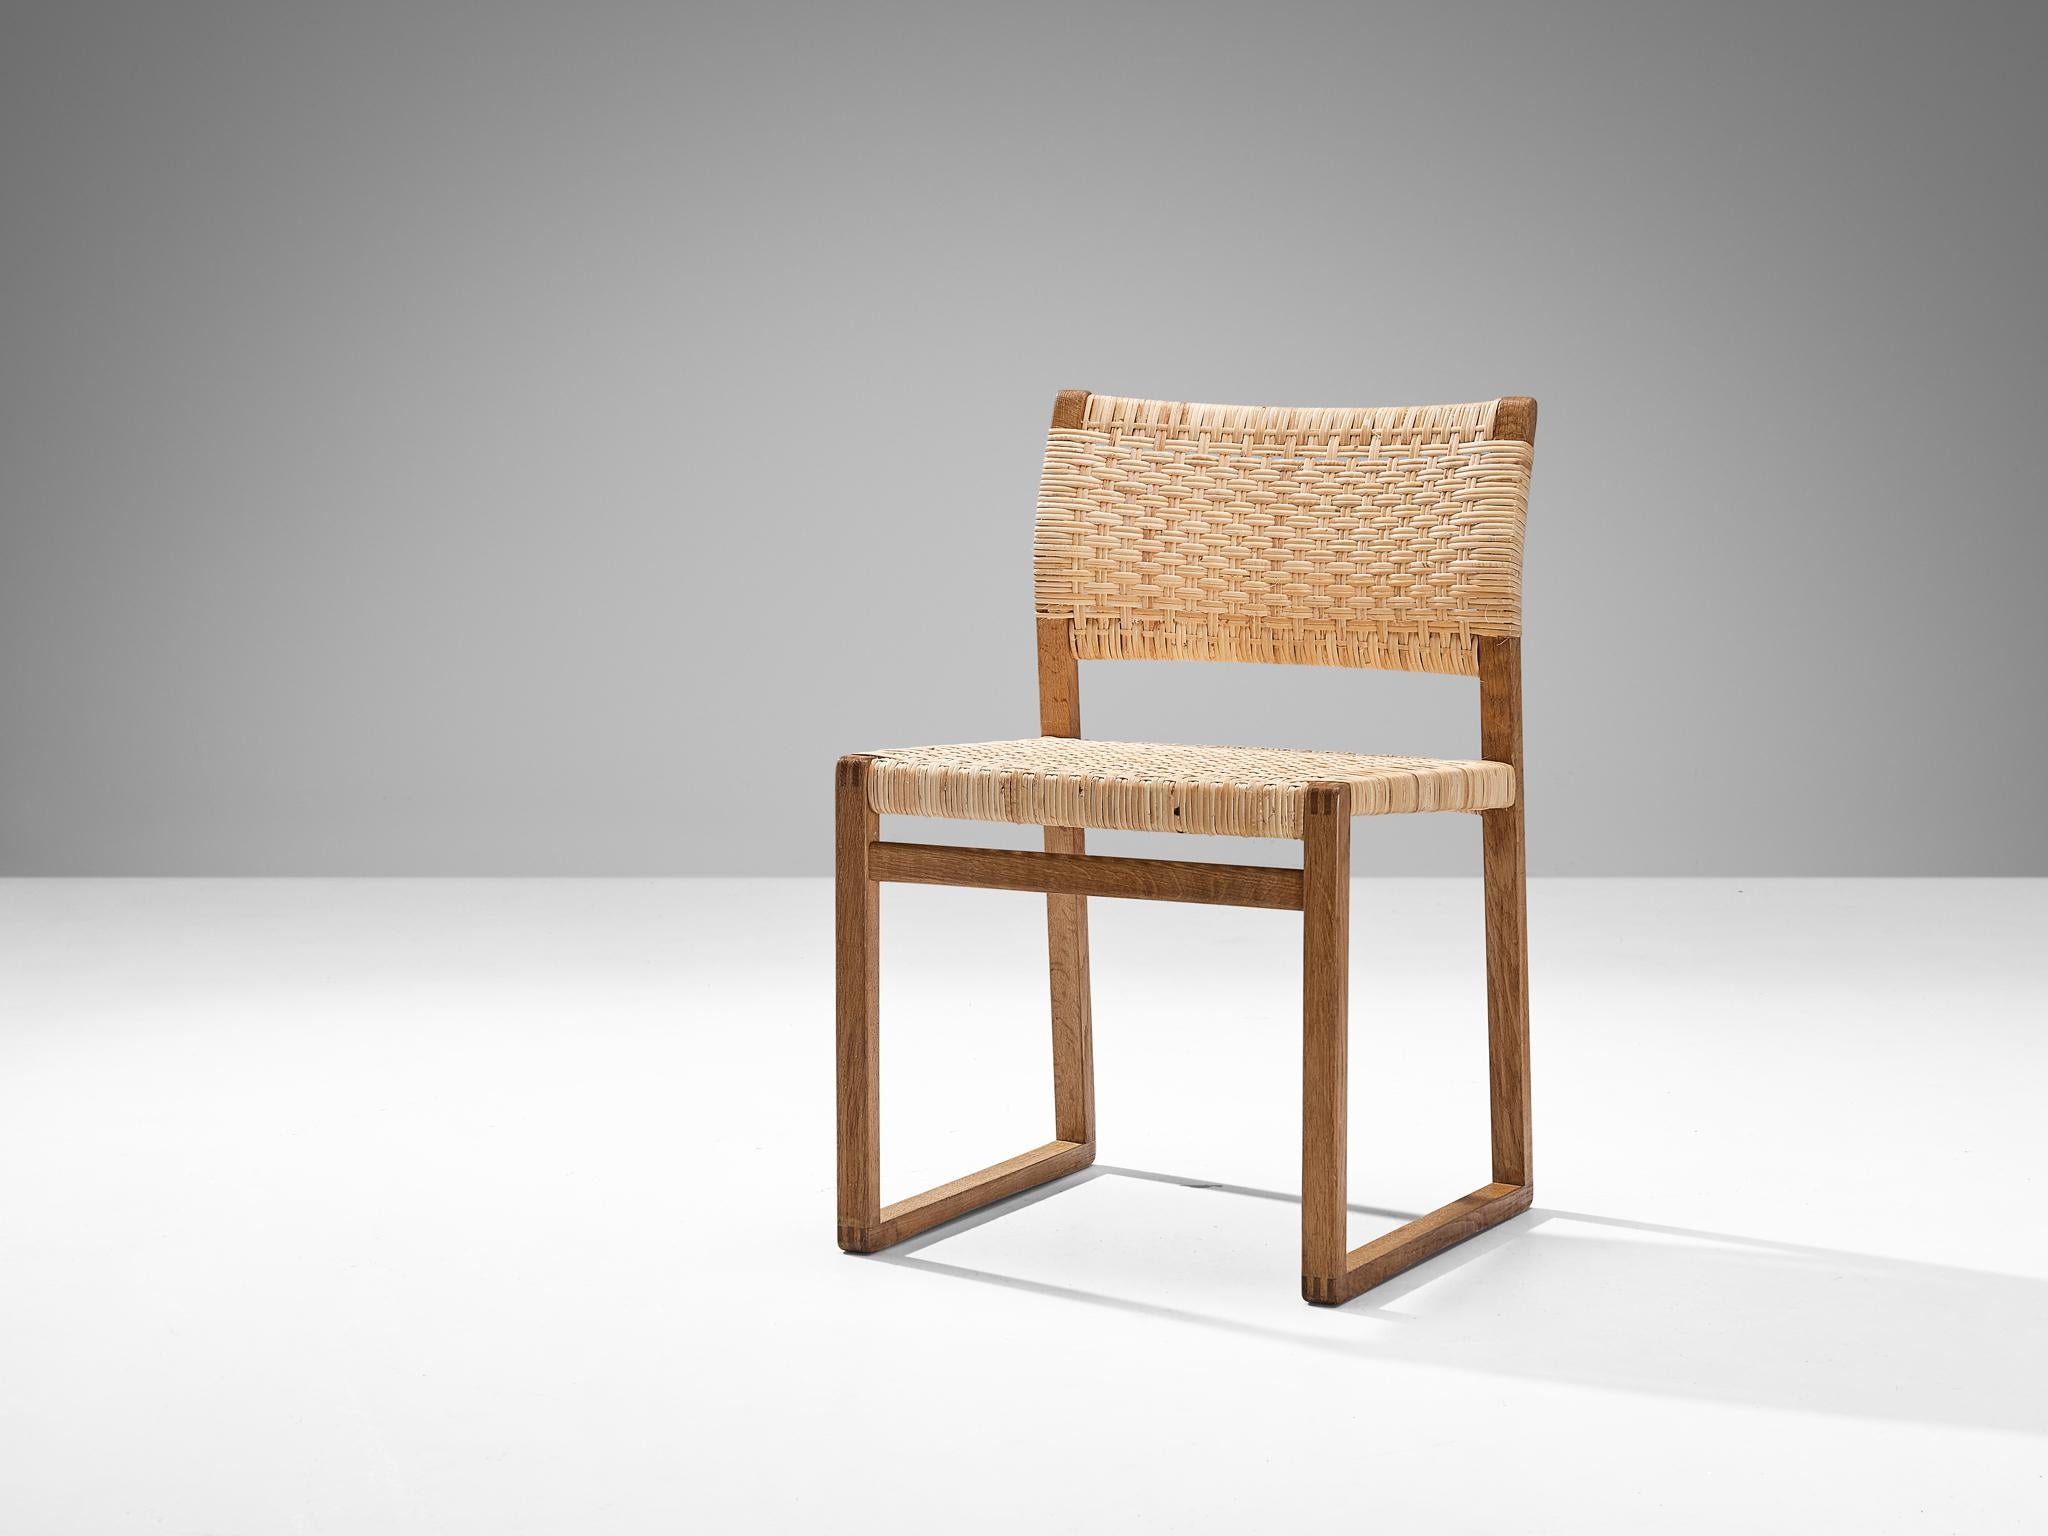 Børge Mogensen pour Fredericia, chaise de salle à manger, modèle 'BM 61', chêne, cannage, Danemark, années 1950.

Cette chaise à l'allure naturaliste se caractérise par un splendide design aux formes simples et aux matériaux authentiques. Le cadre